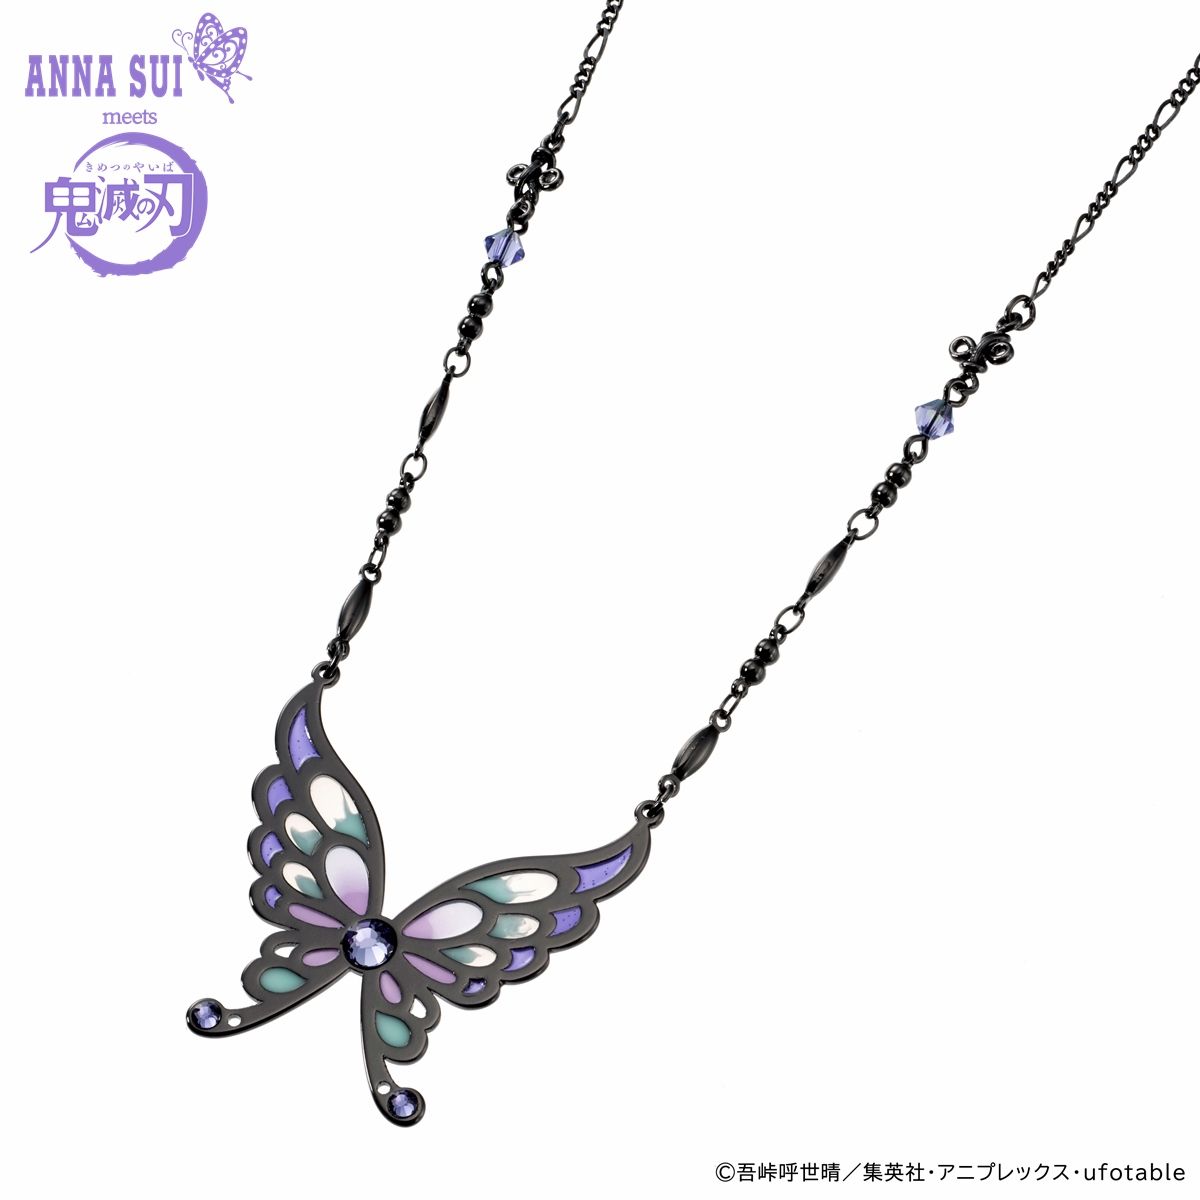 【新品未使用✨】ANNA SUI × 鬼滅の刃ネックレス 胡蝶しのぶ 蝶